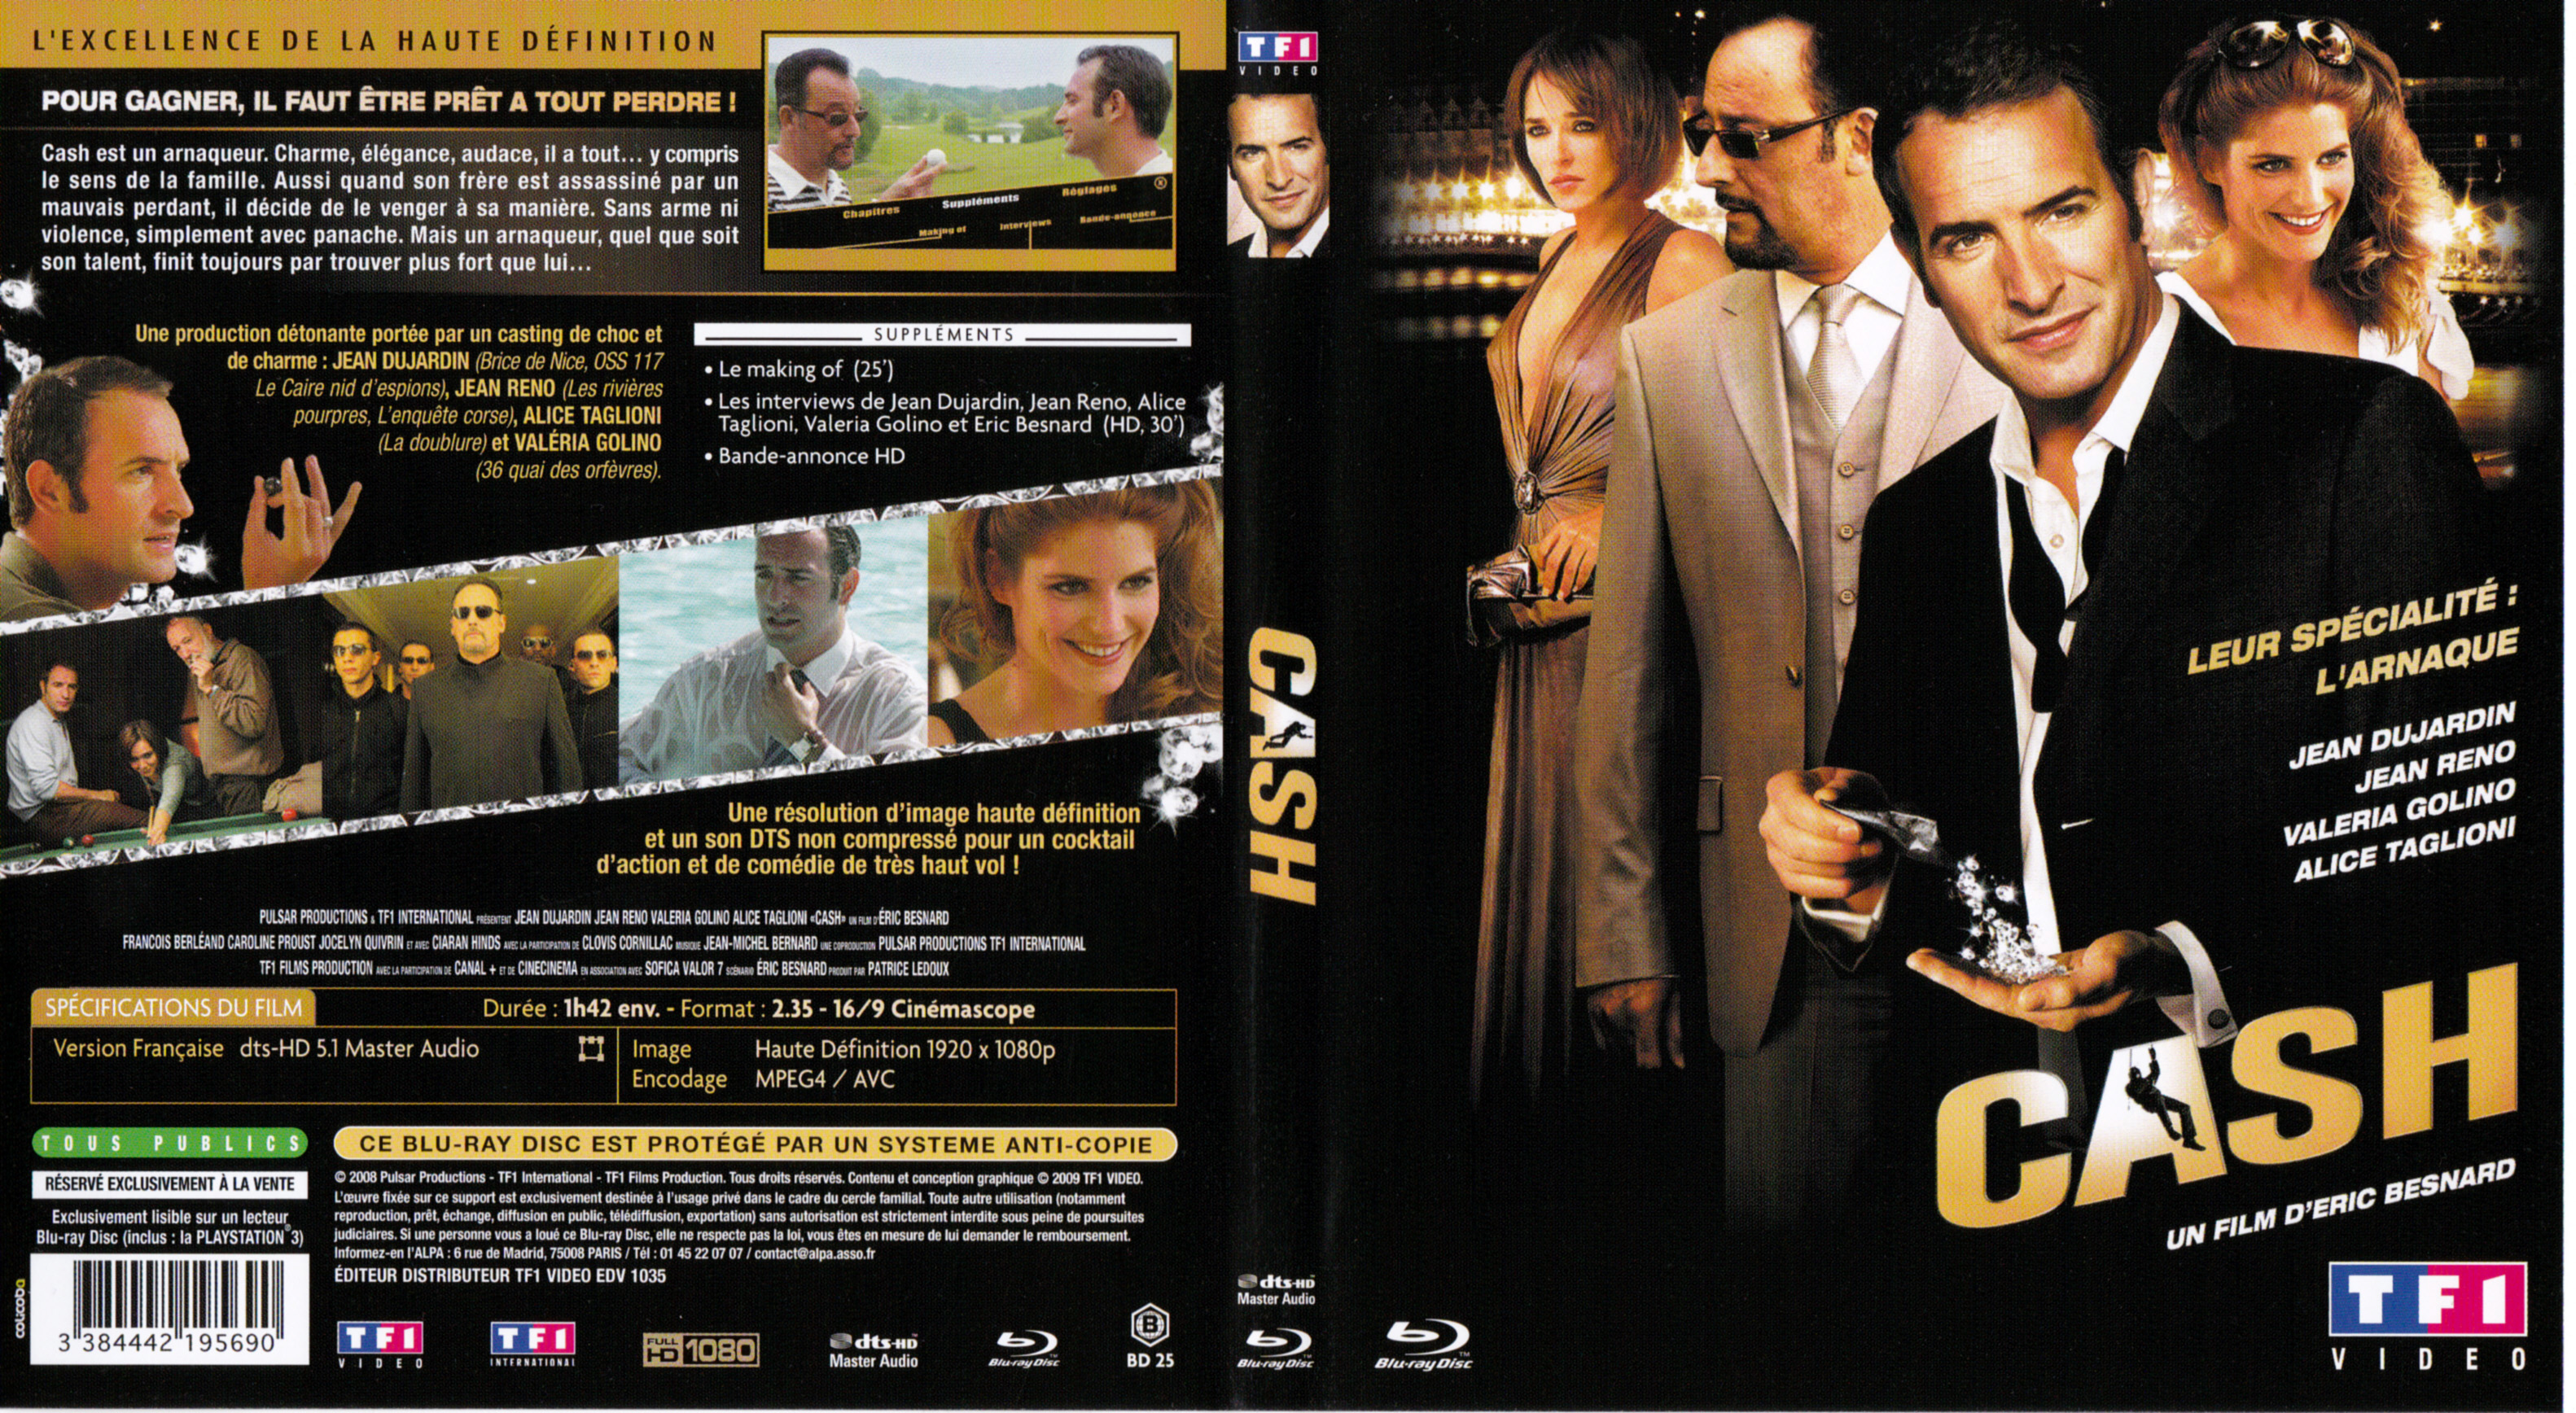 Jaquette DVD Cash (BLU-RAY) v2 (dpi 300)